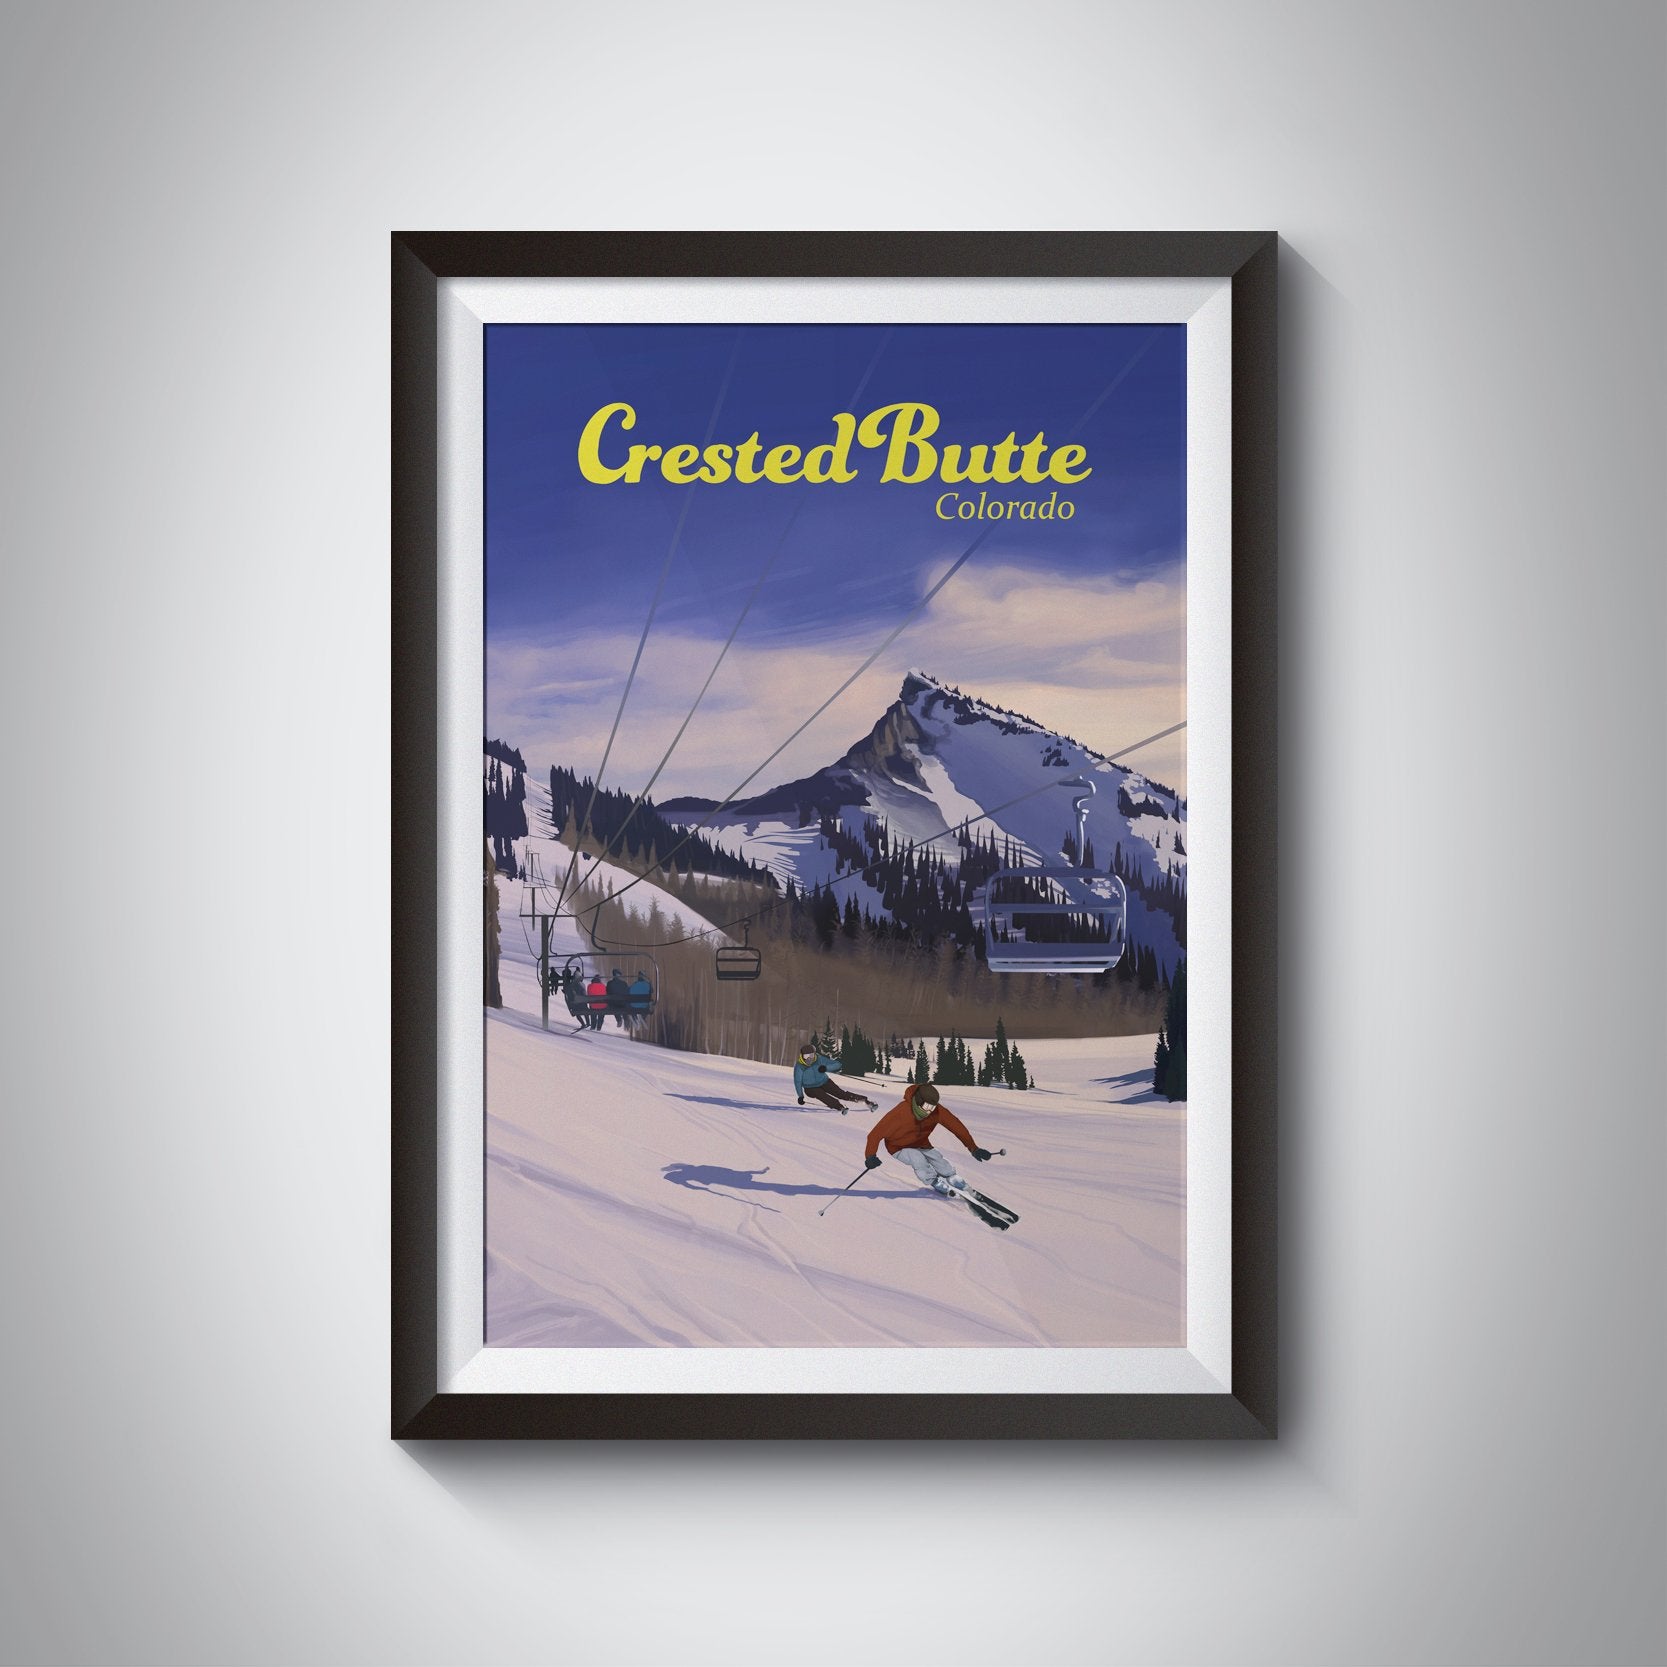 Crested Butte Colorado Ski Resort Travel Poster